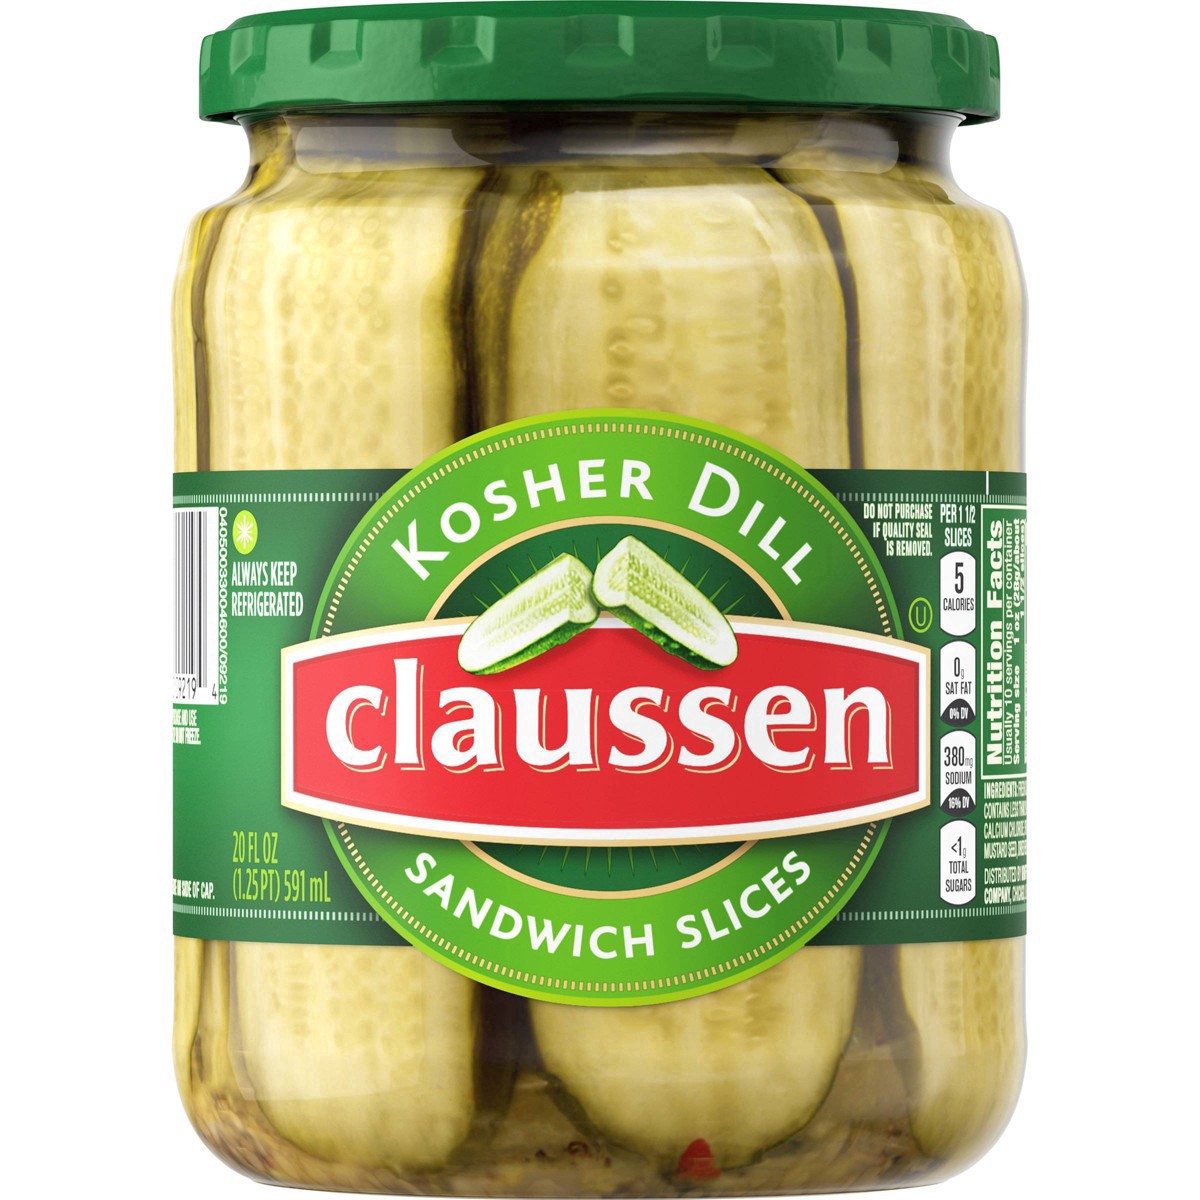 slide 62 of 144, Claussen Kosher Dill Pickle Sandwich Slices, 20 fl. oz. Jar, 20 fl oz